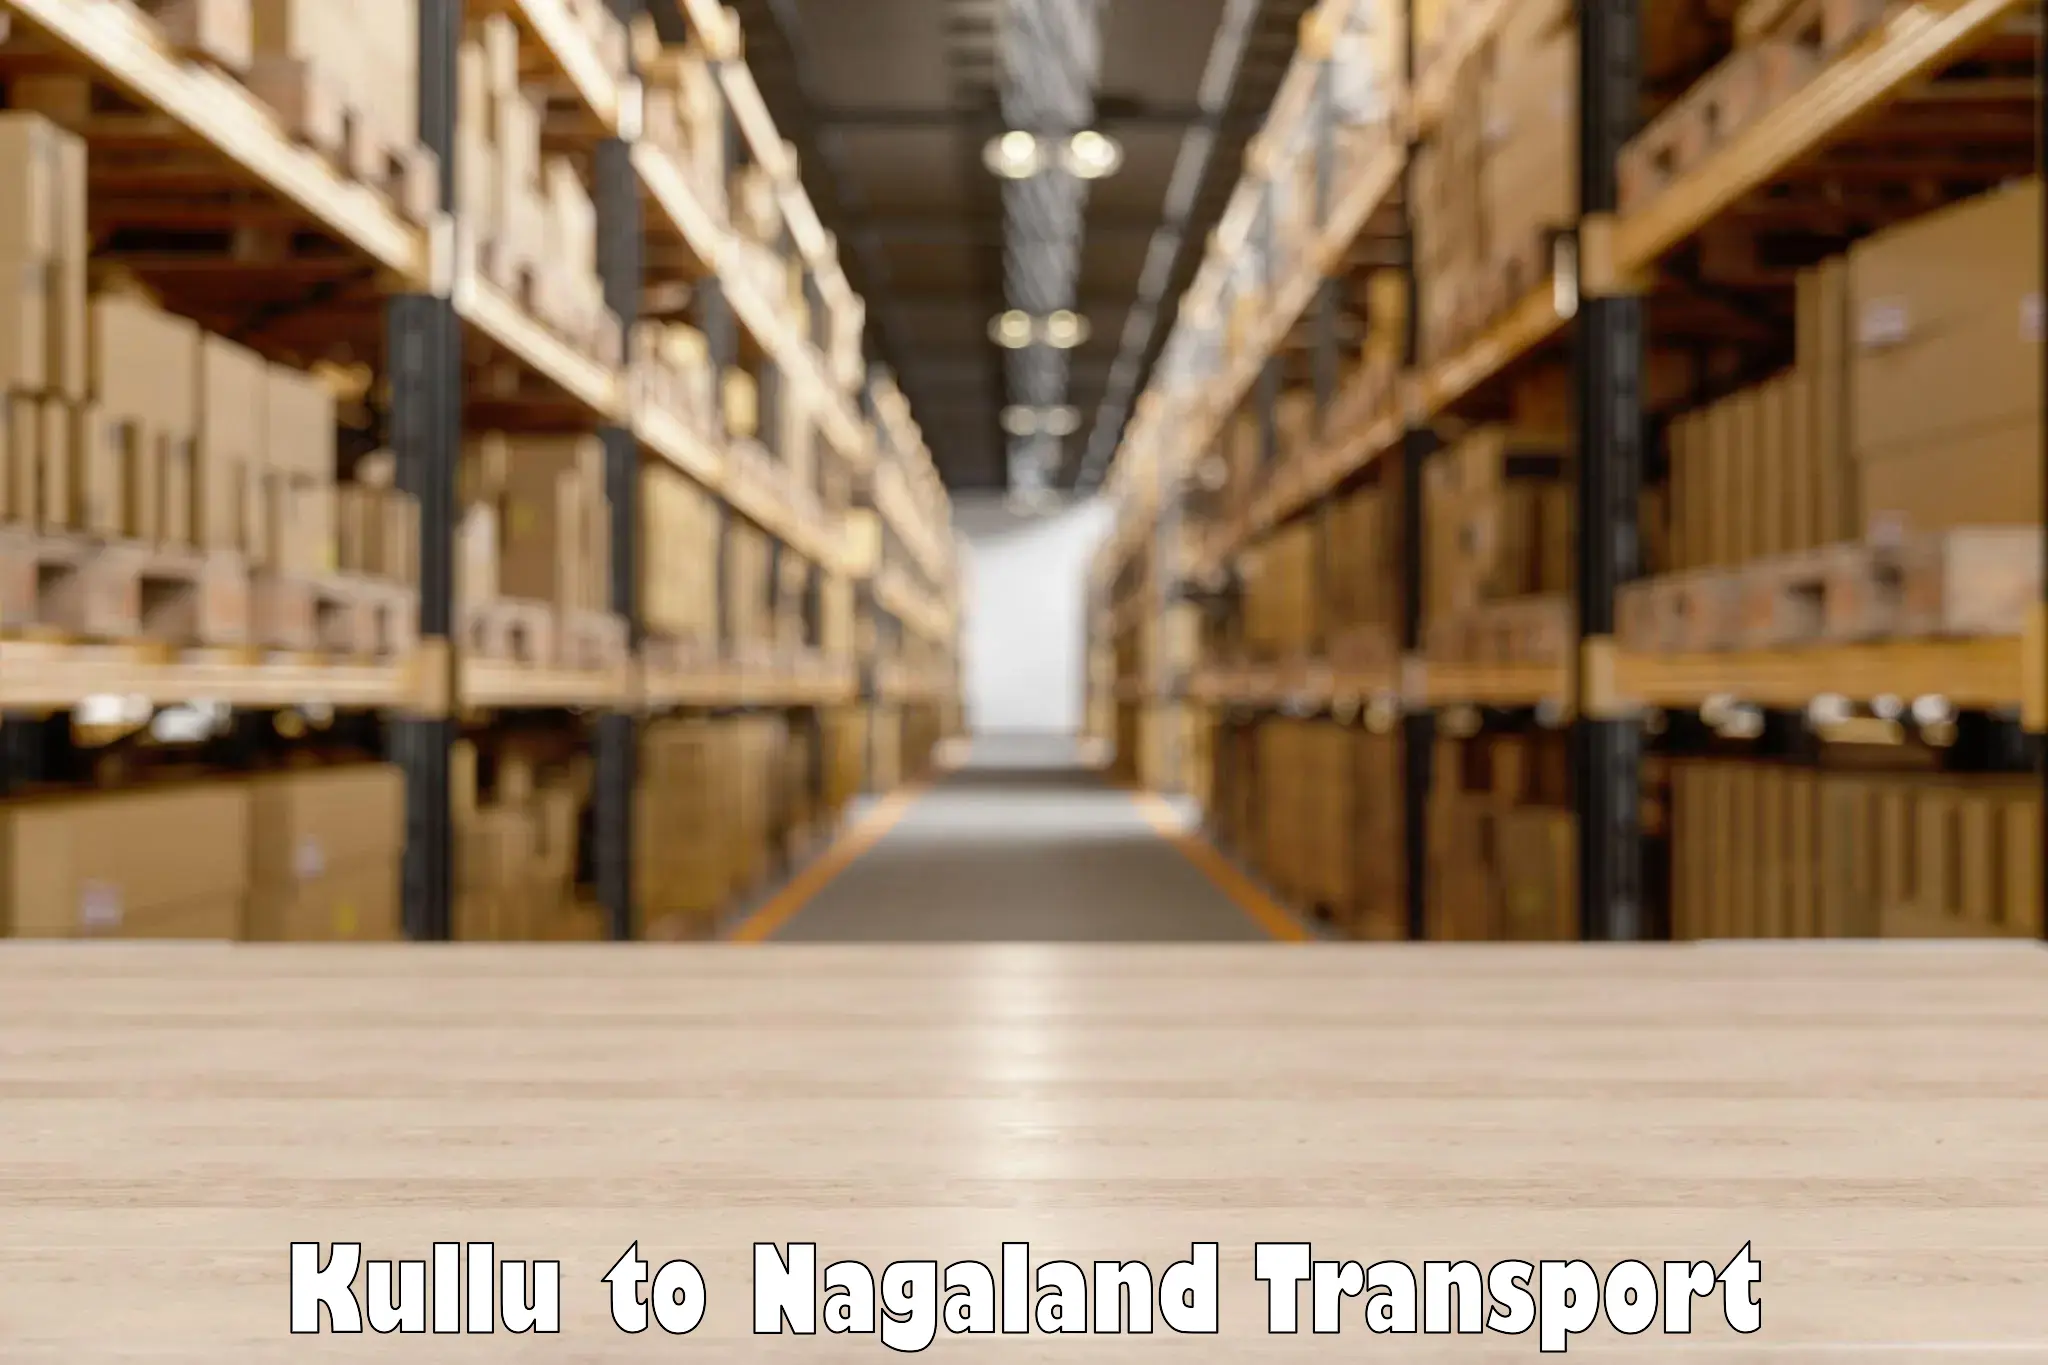 Commercial transport service Kullu to NIT Nagaland